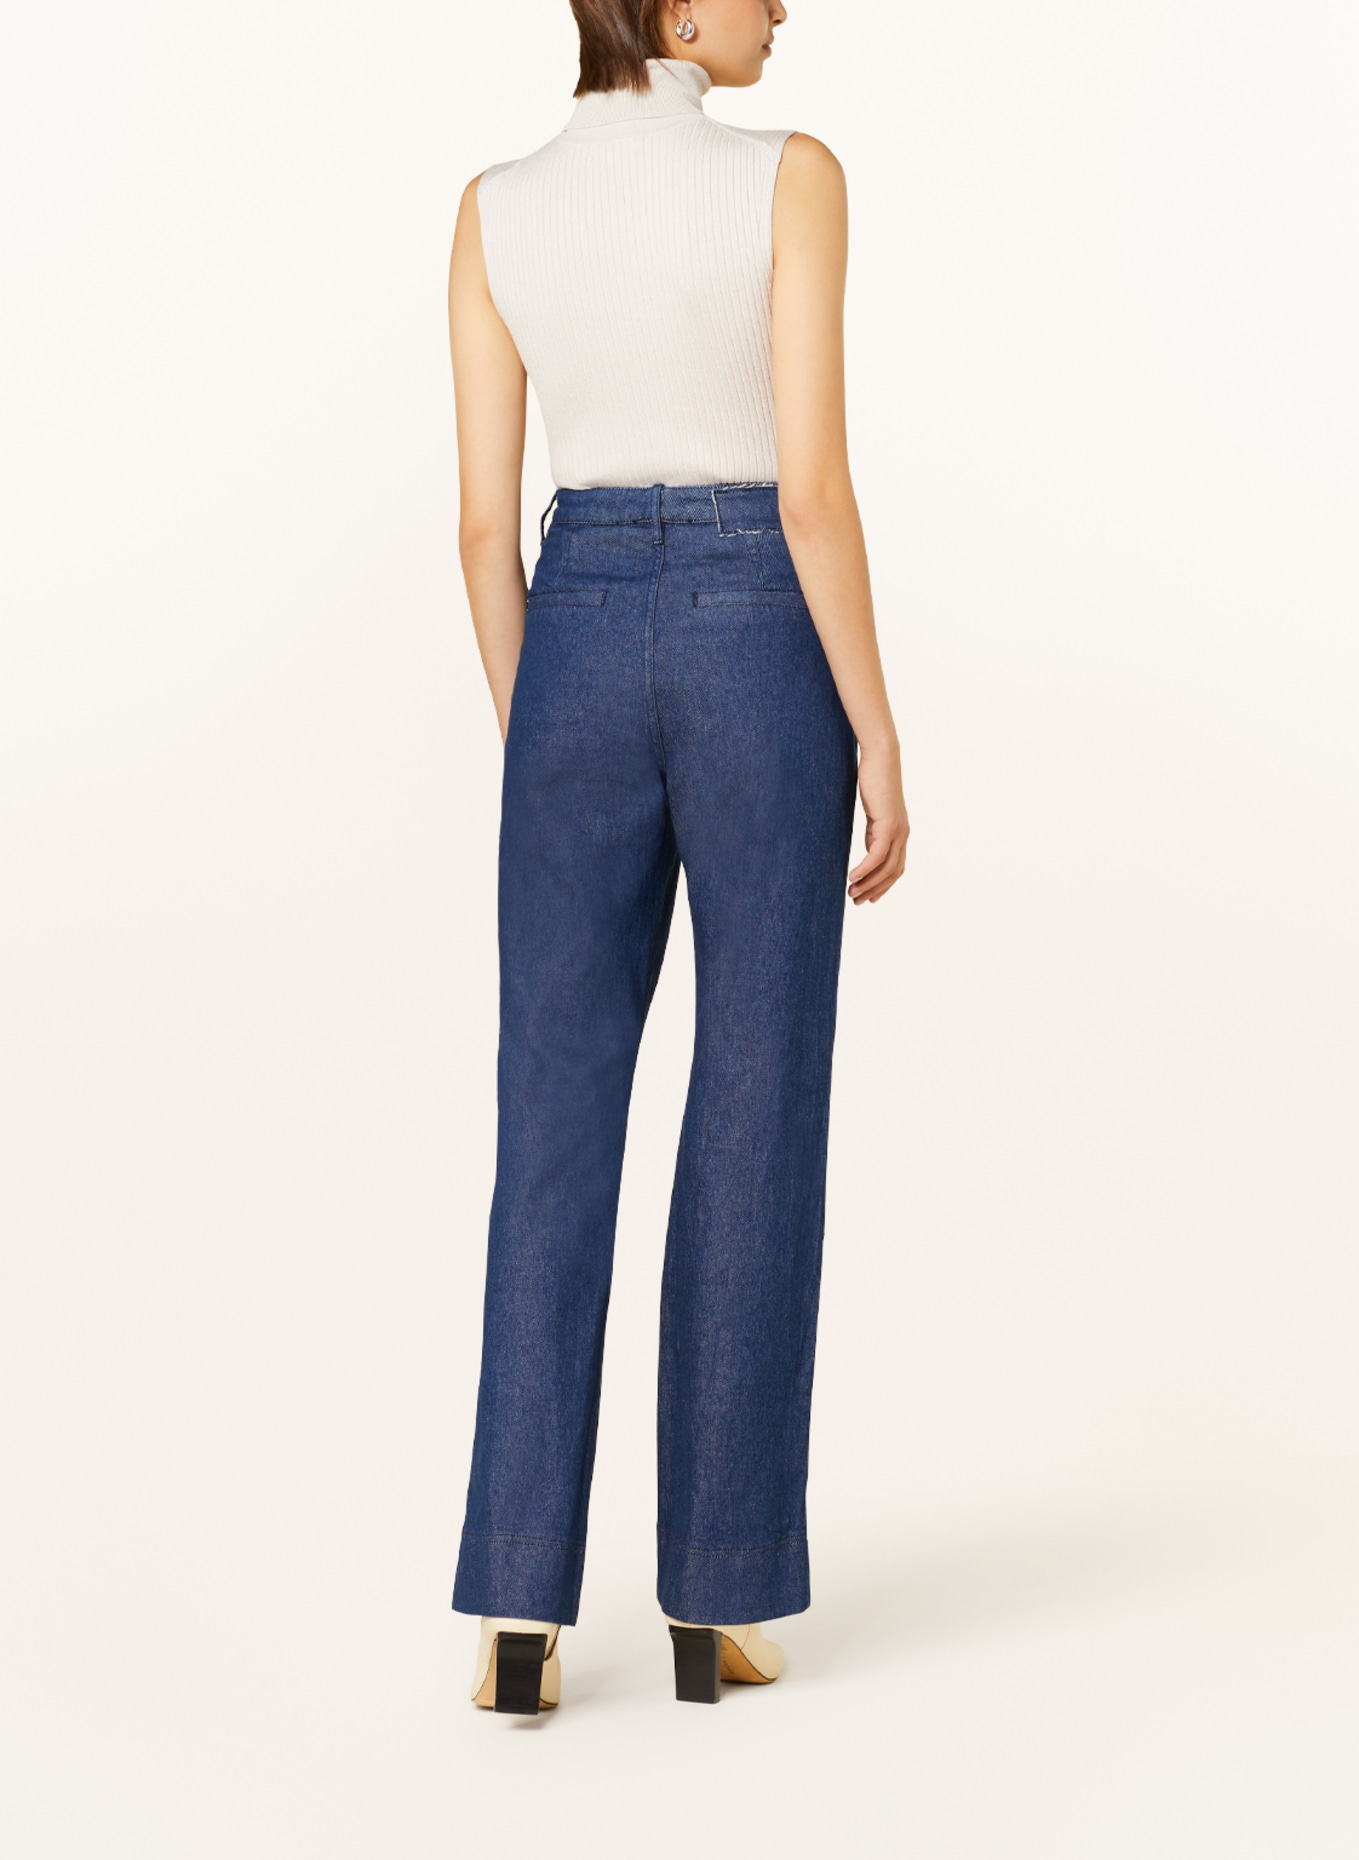 VANILIA Bootcut jeans, Color: 882 Jeans (Image 3)